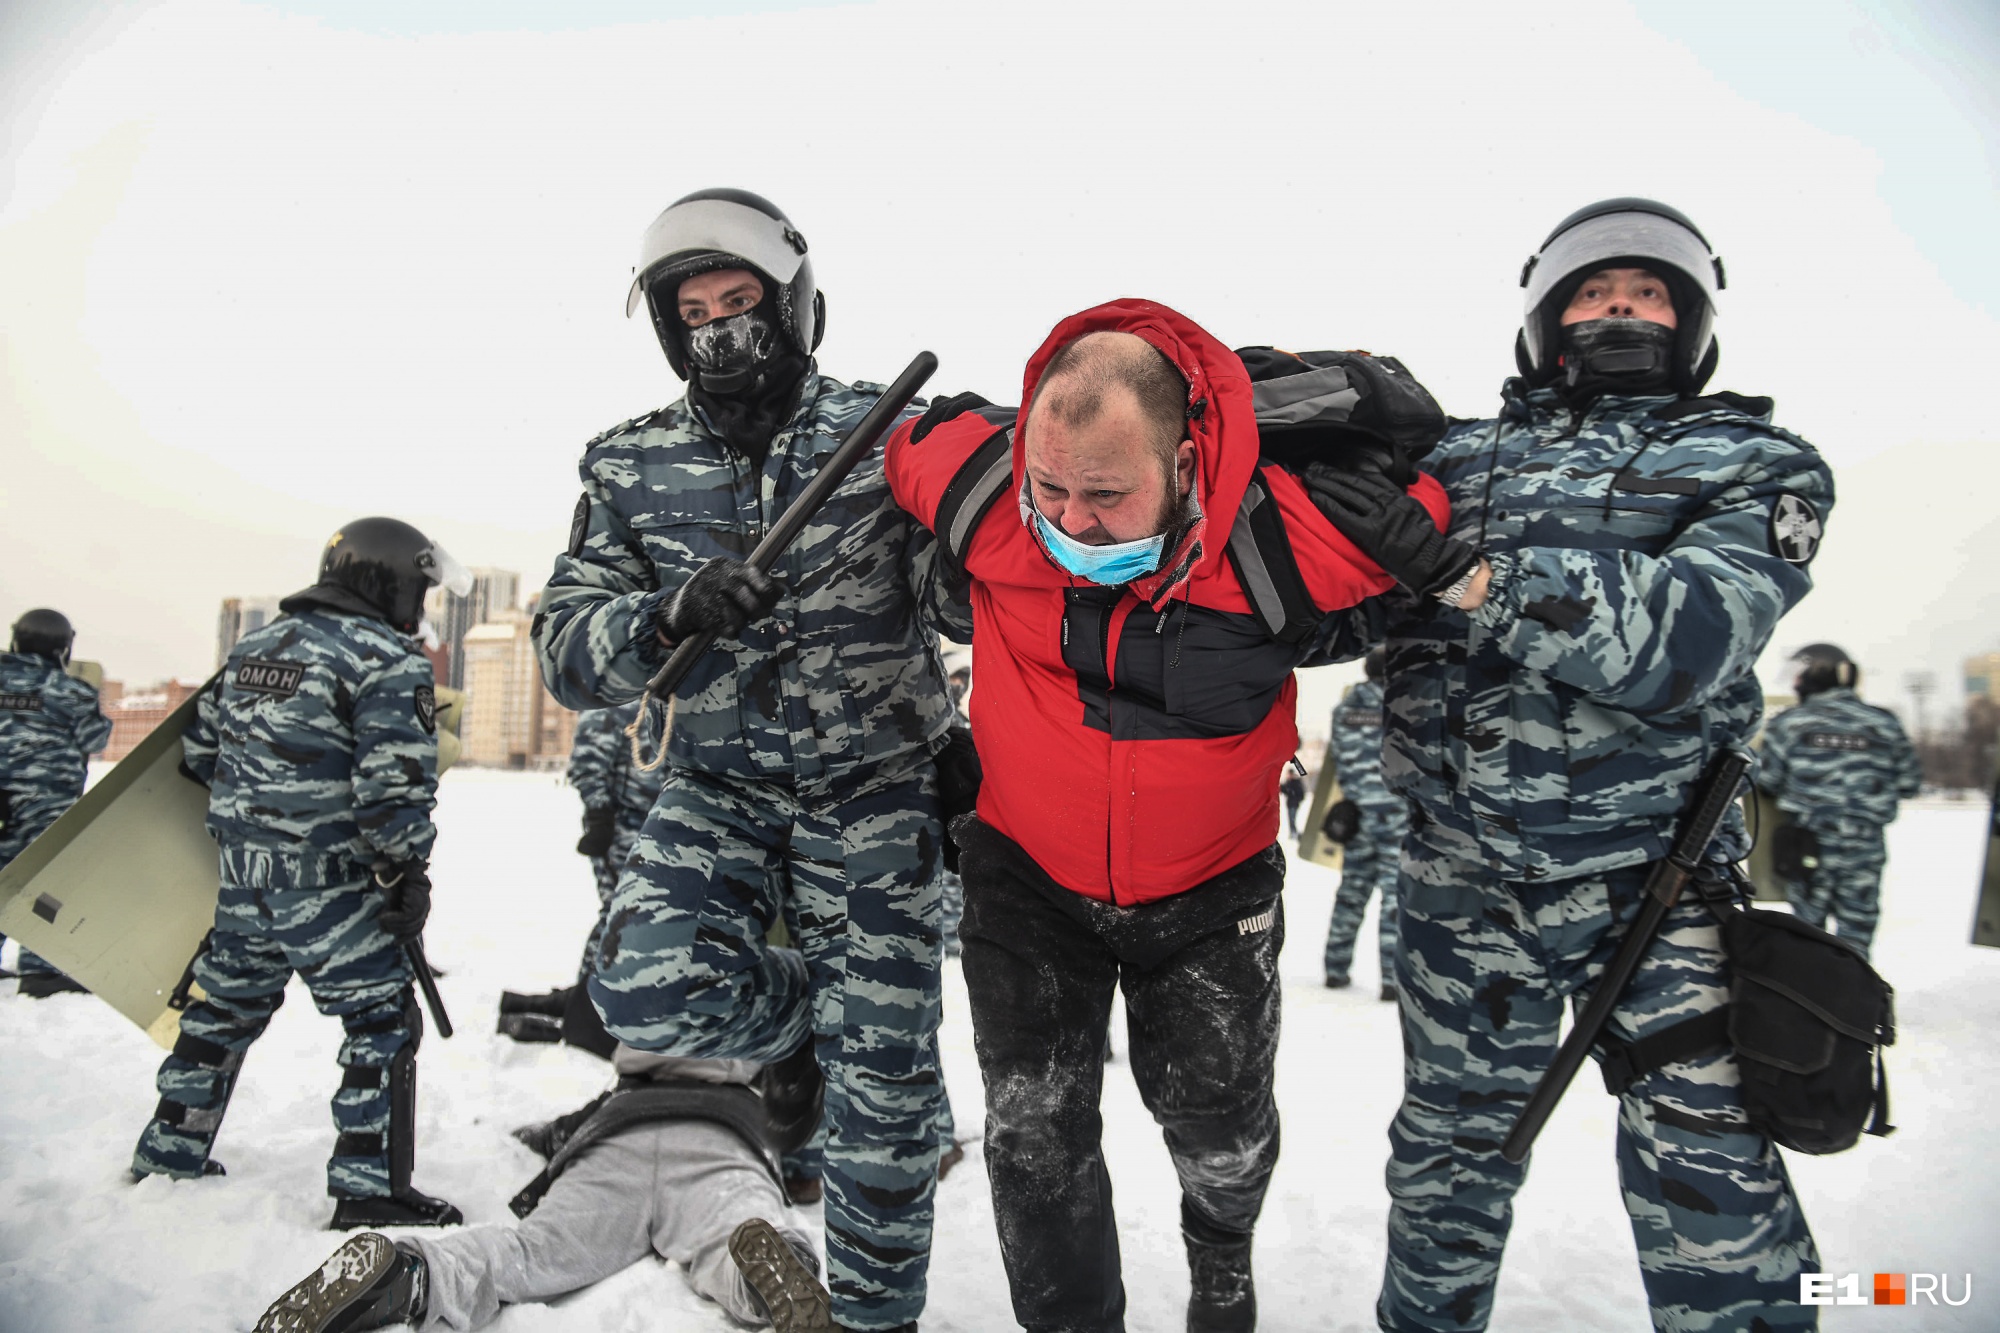 «Мне бегать не от чего — я в своей стране»: интервью с задержанным на акции протеста в Екатеринбурге